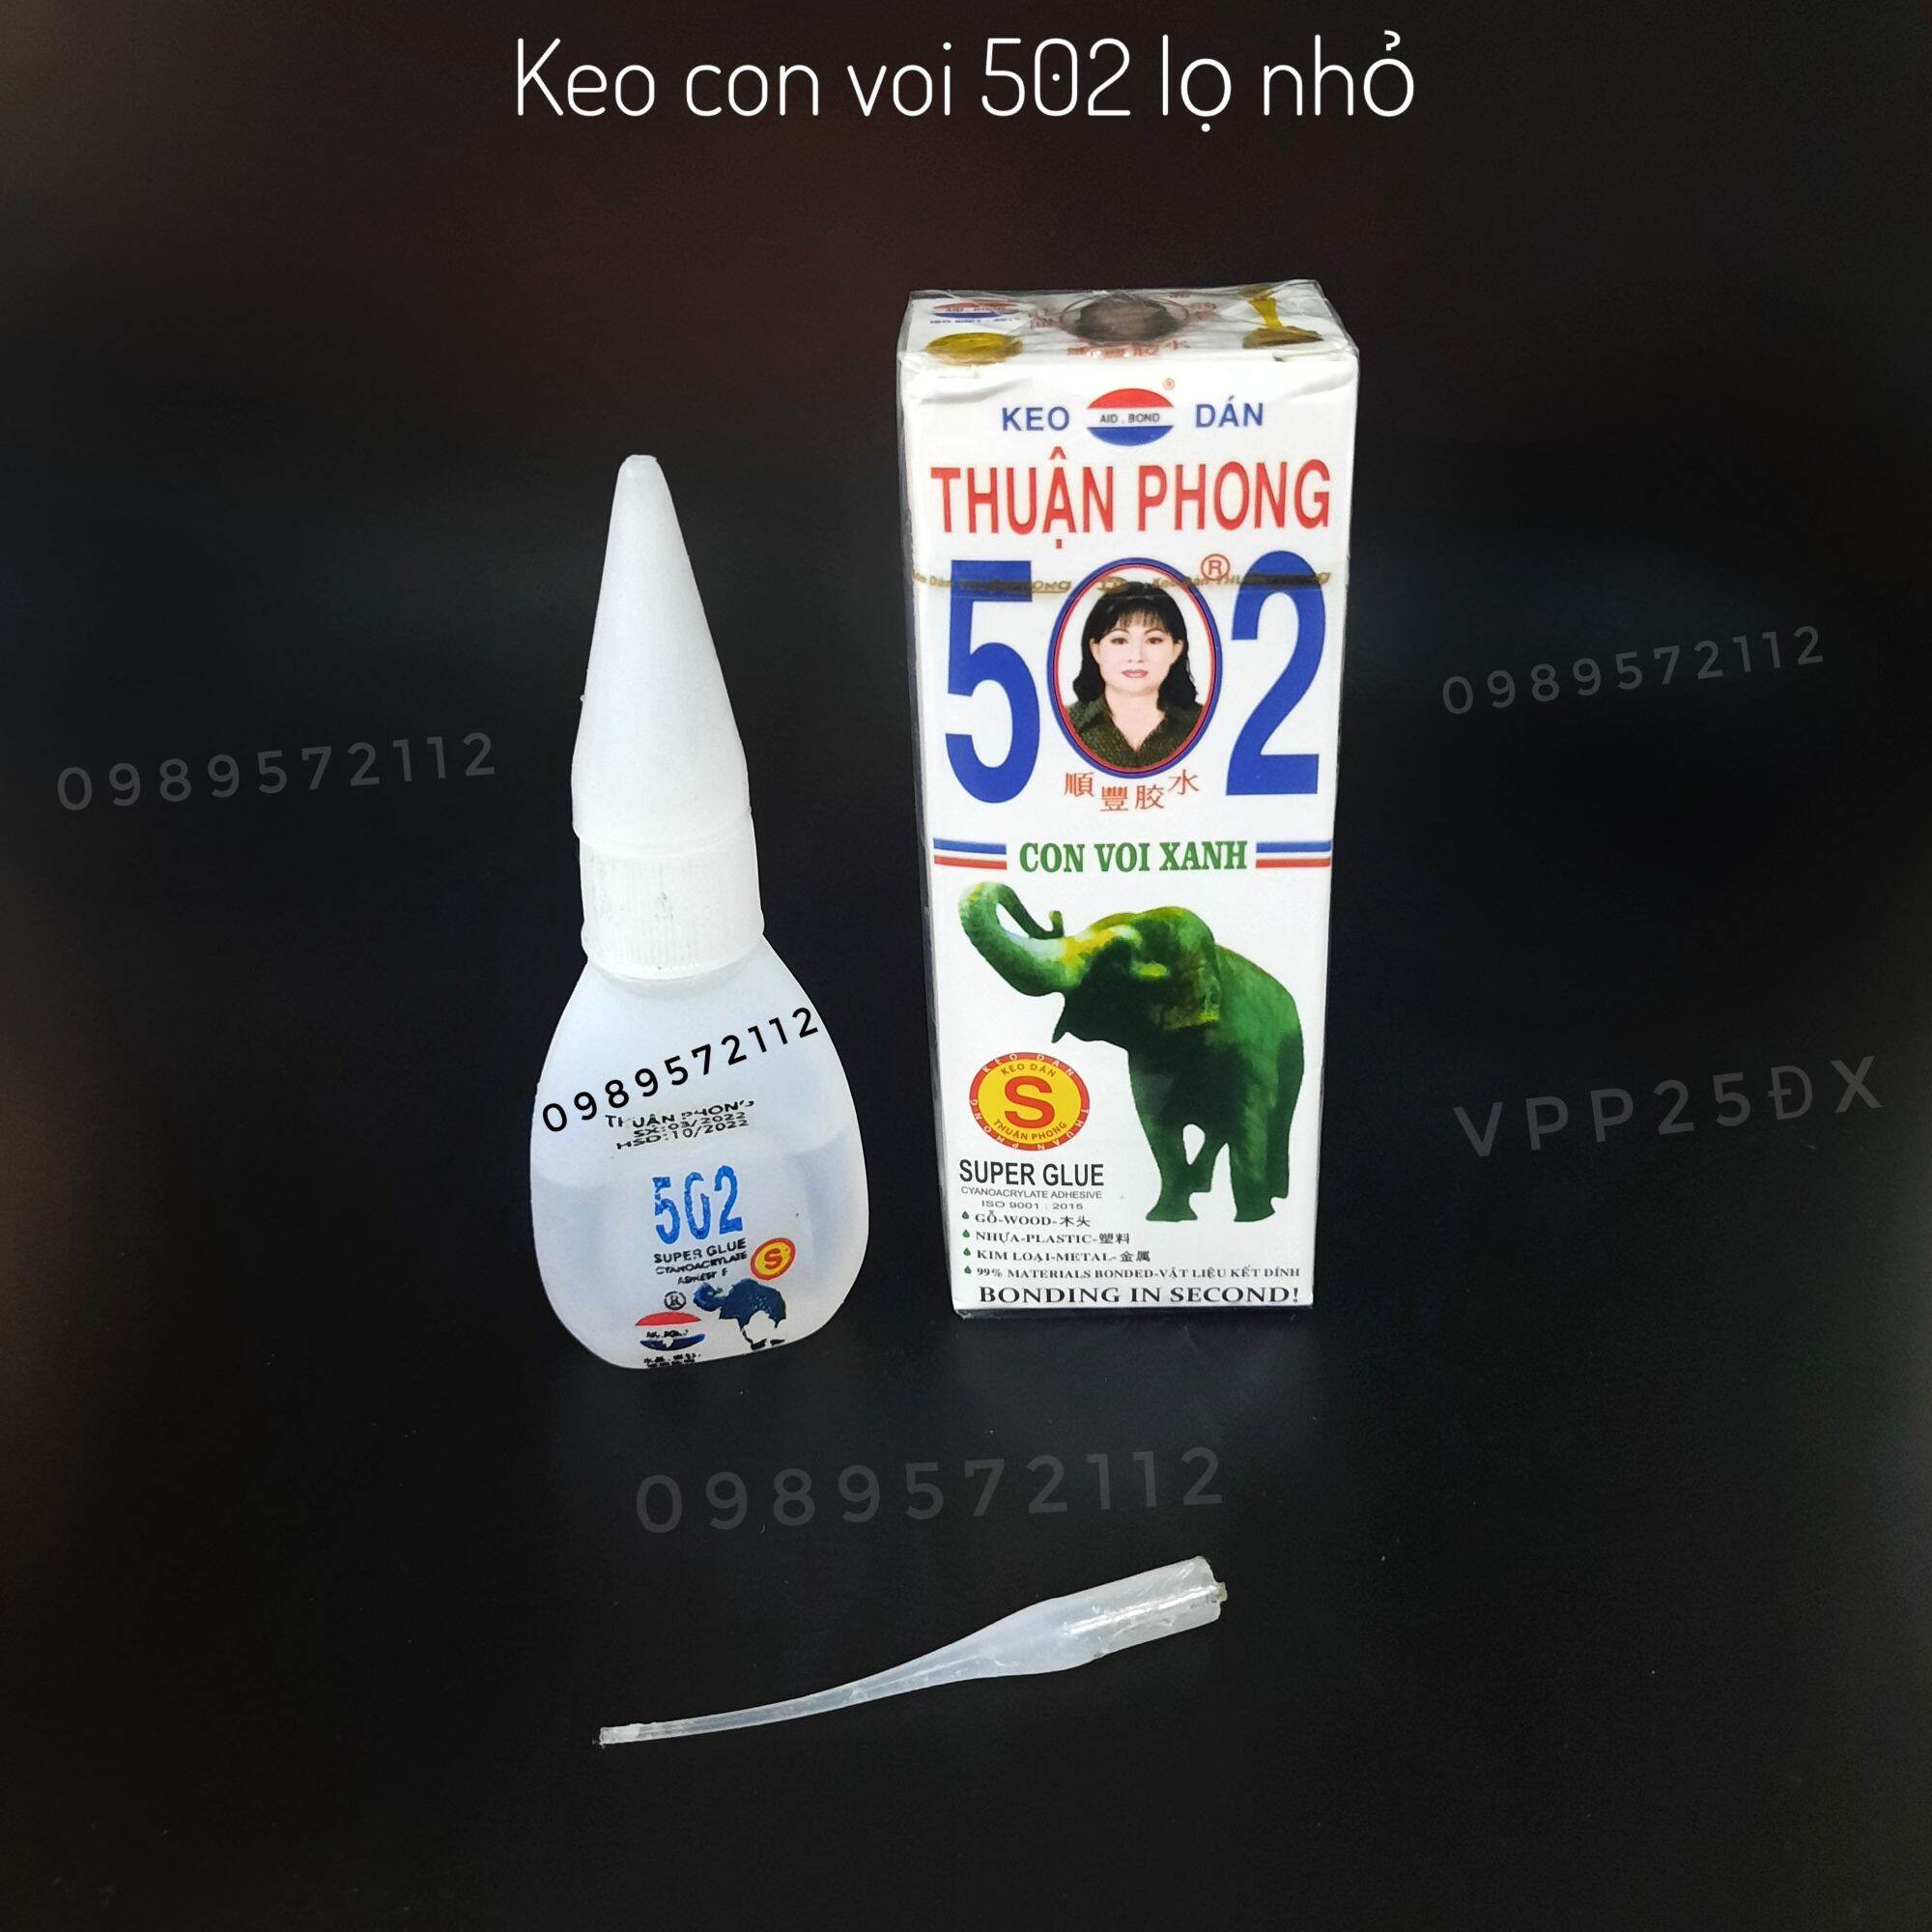 Keo voi 502S Thuận Phong (hàng chính hãng).